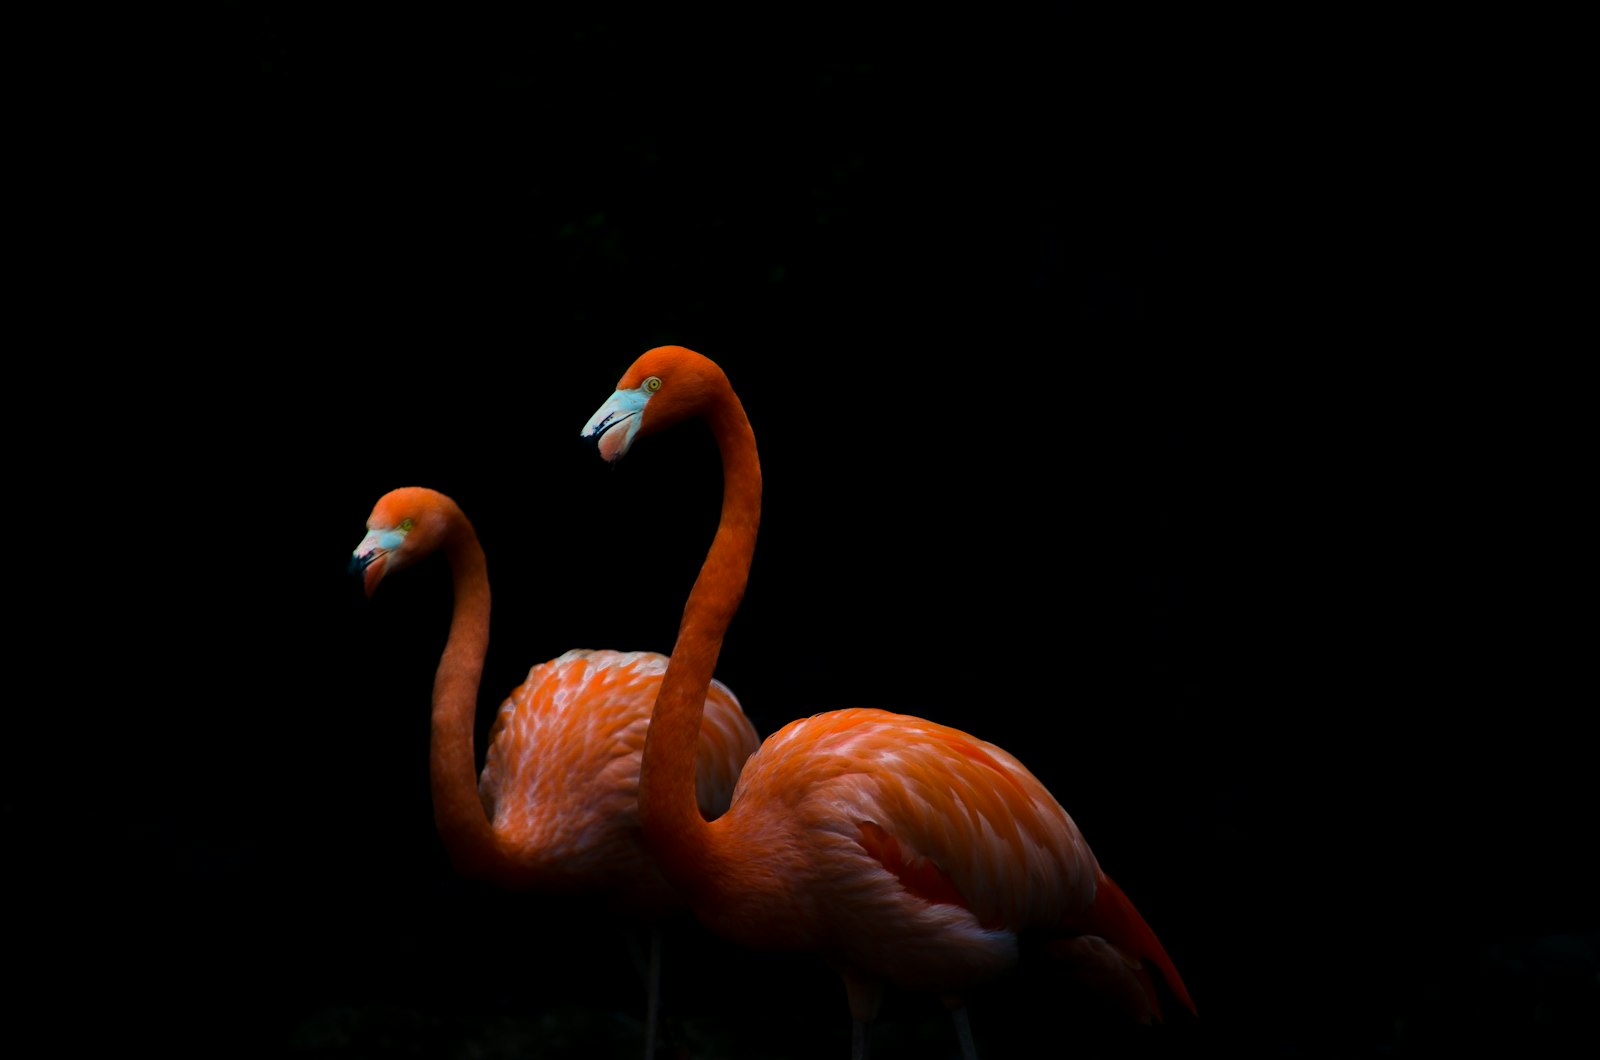 Nikon D5100 + Nikon AF-S DX Nikkor 55-200mm F4-5.6G VR sample photo. Two orange flamingo birds photography